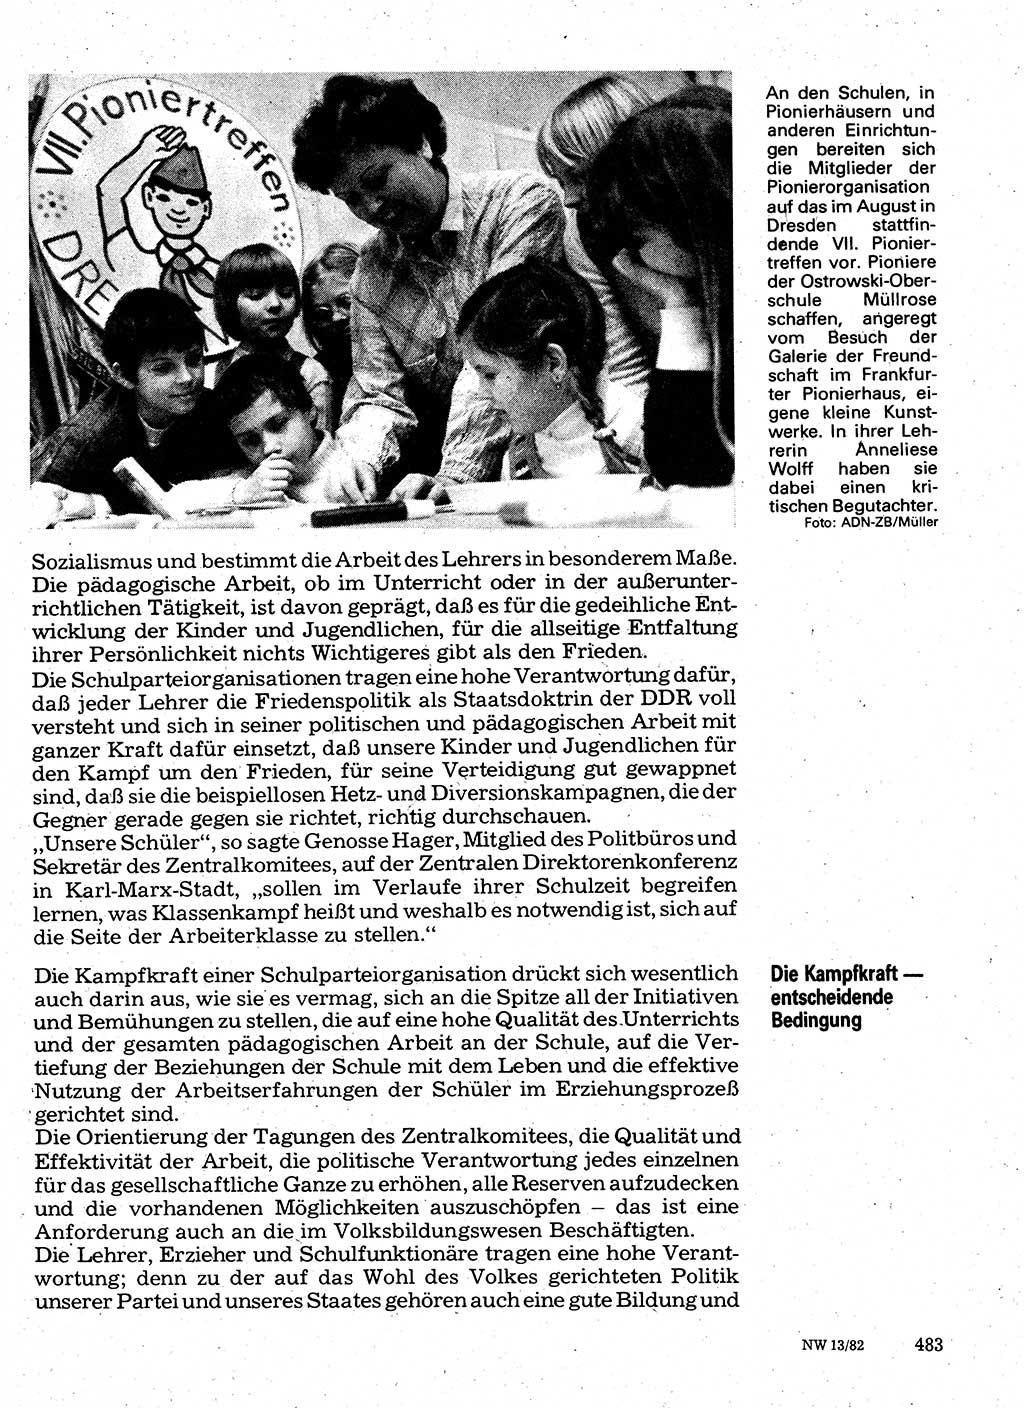 Neuer Weg (NW), Organ des Zentralkomitees (ZK) der SED (Sozialistische Einheitspartei Deutschlands) für Fragen des Parteilebens, 37. Jahrgang [Deutsche Demokratische Republik (DDR)] 1982, Seite 483 (NW ZK SED DDR 1982, S. 483)